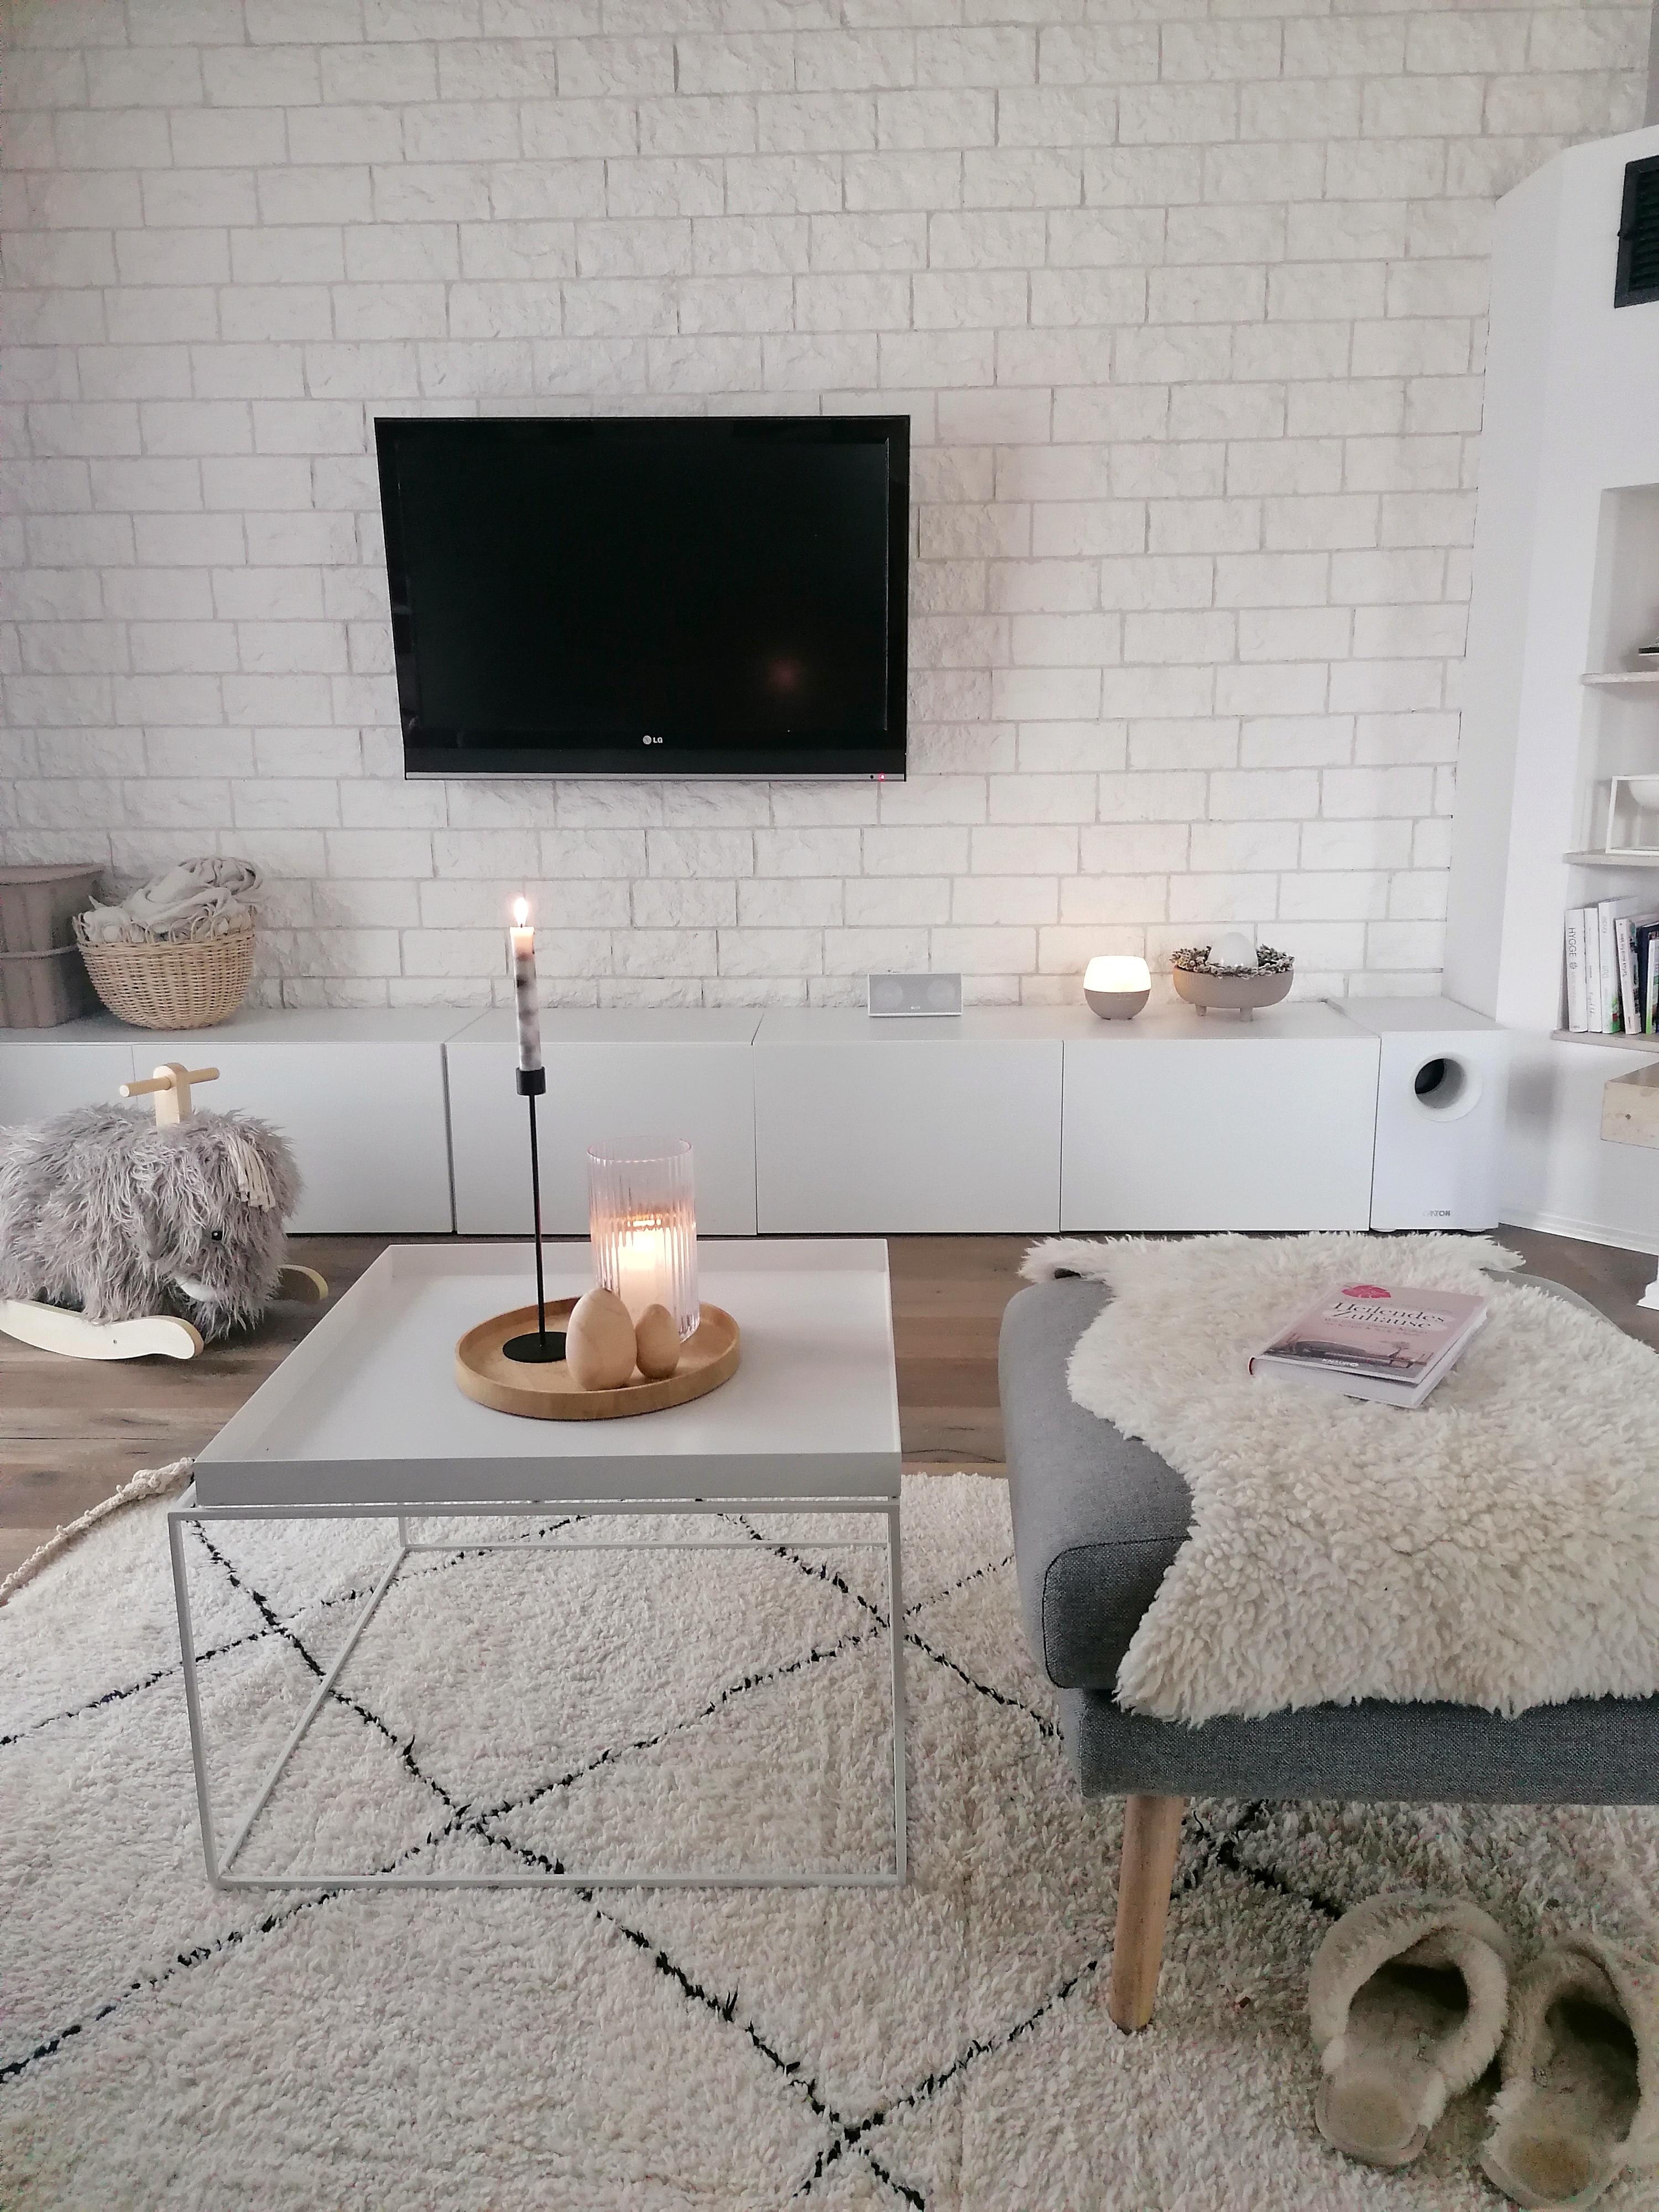 Wir machen es uns gemütlich
#wohnzimmer #minimalismo #livingroom #einrichtungsideen #dekoideen 